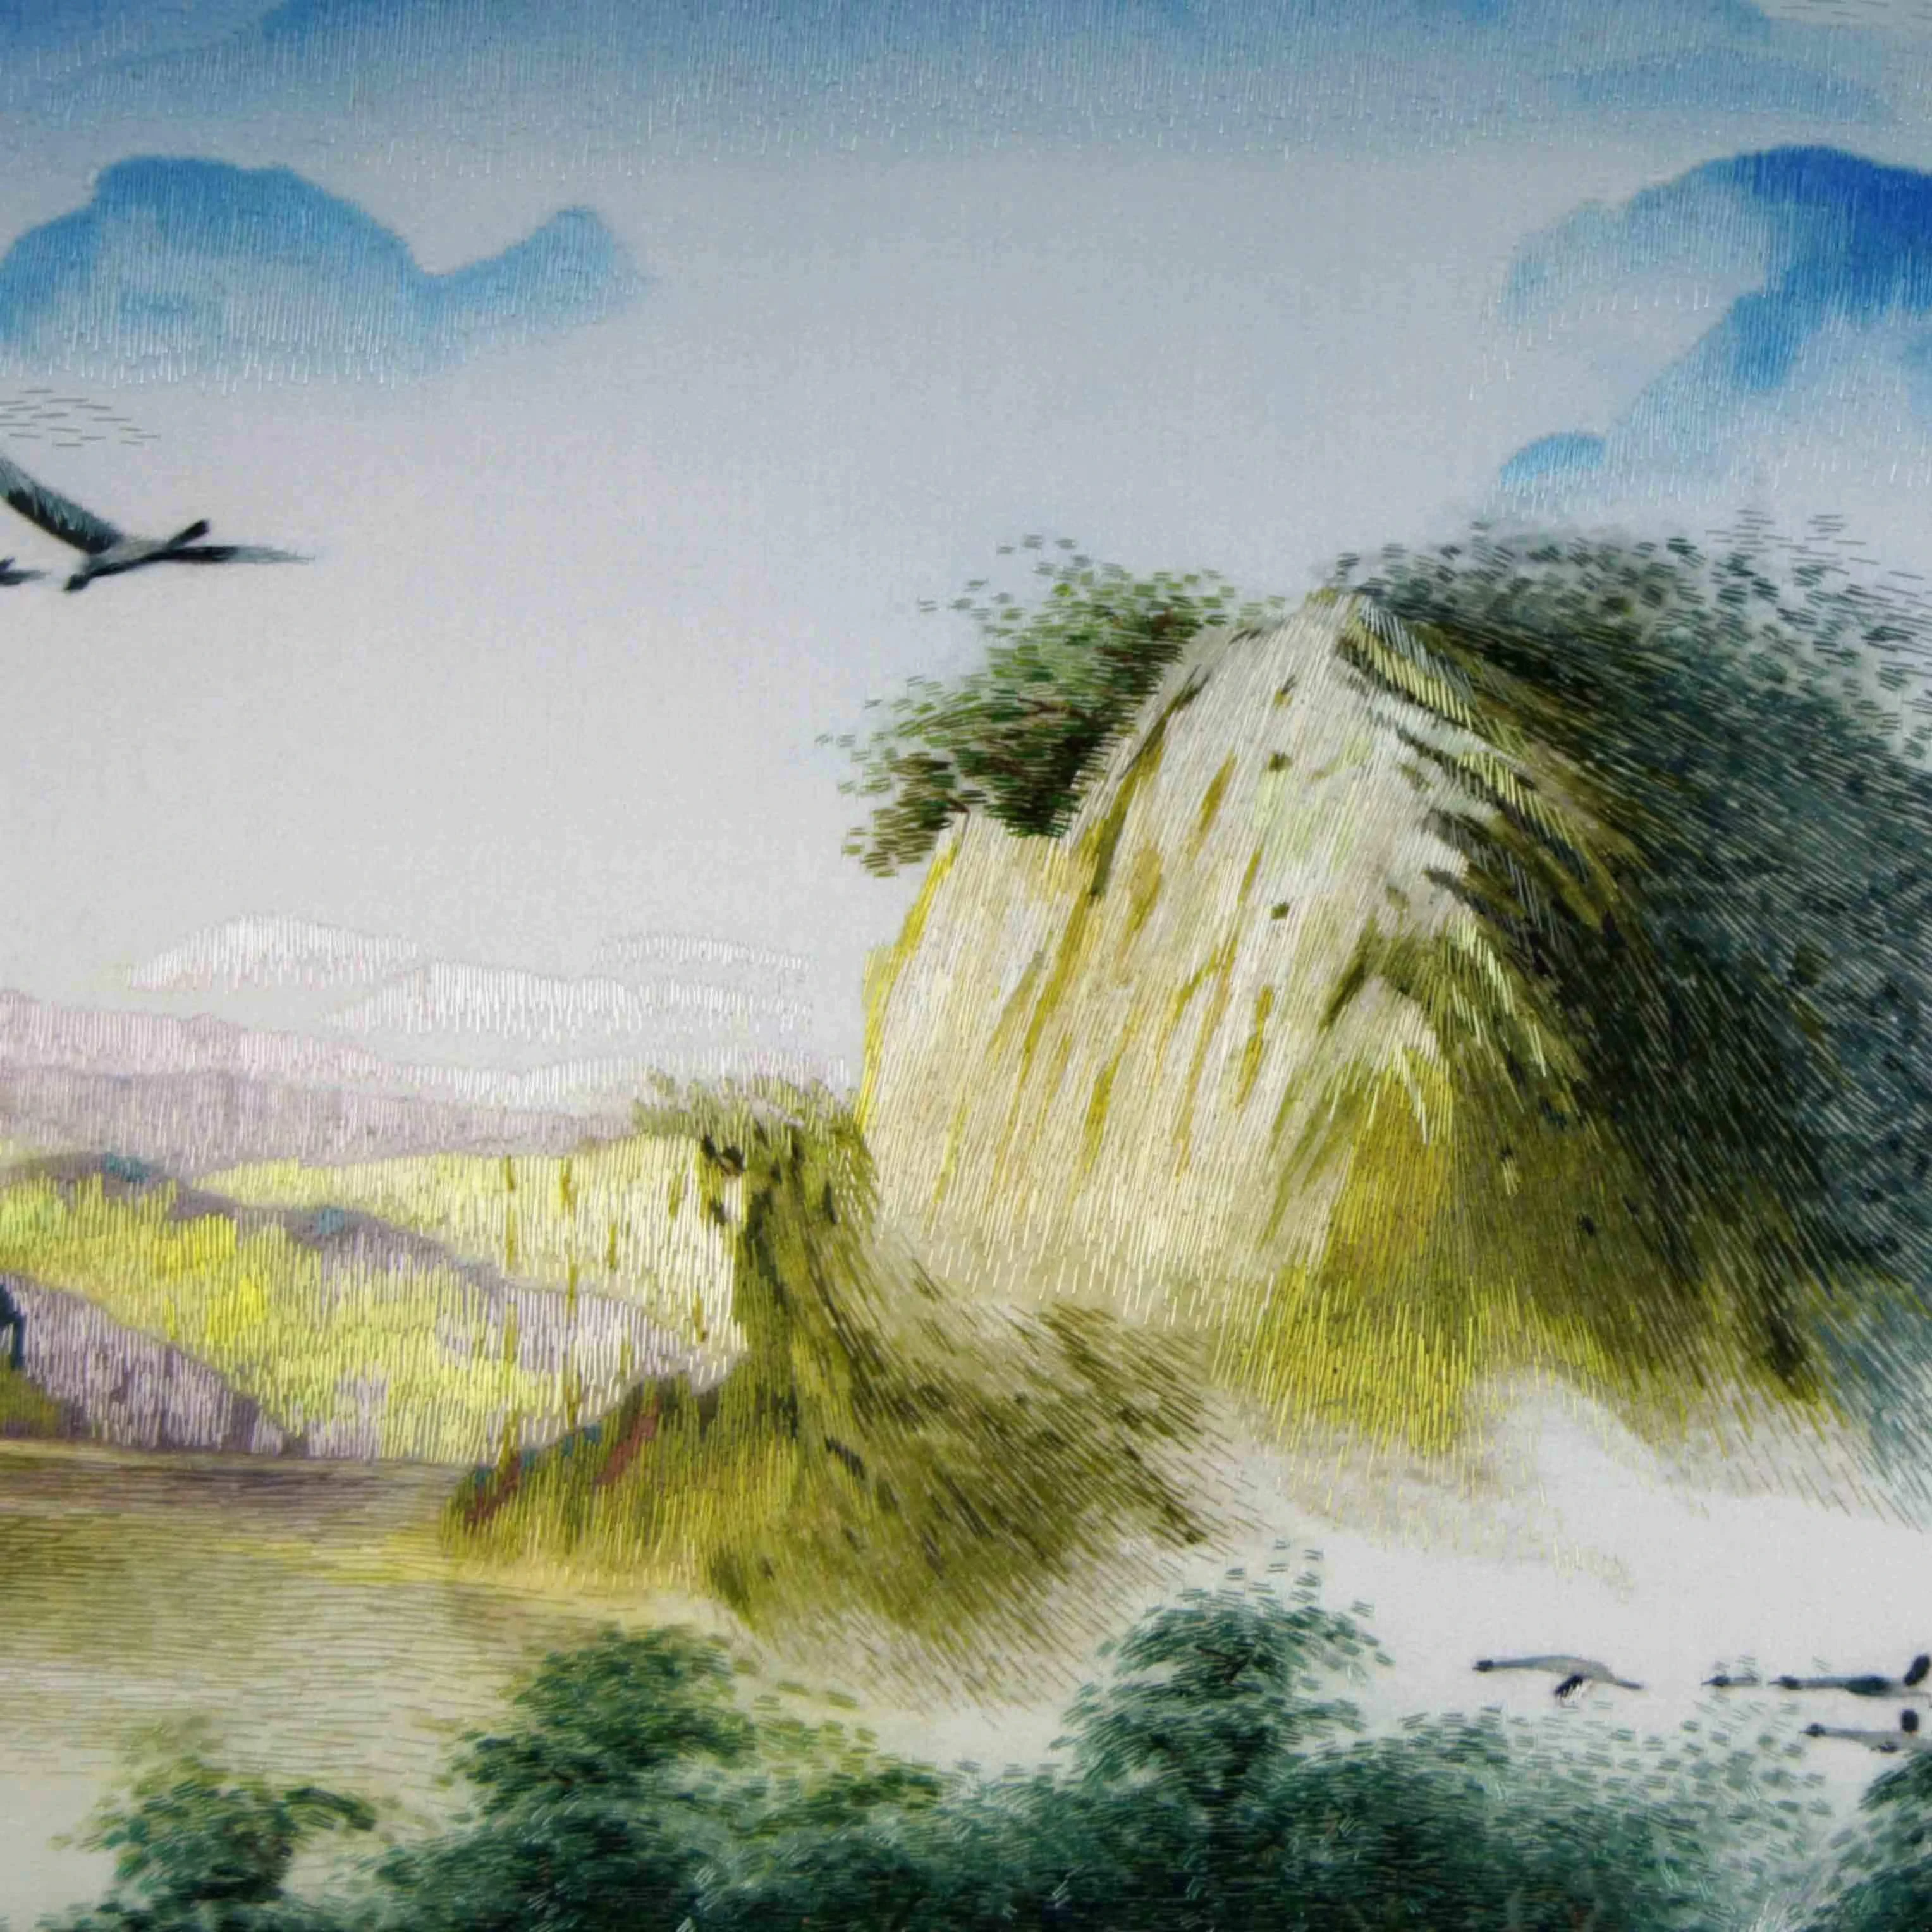 Tranh vẽ phong cảnh Trung Quốc là một trong những điểm nhấn lớn đến từ Tô Châu Trung Quốc. Các tác phẩm thể hiện sự kì diệu của thiên nhiên, tạo nên không gian yên bình, tĩnh lặng và mang lại sự thư thái cho người xem. Hãy khám phá tranh treo này để cảm nhận được vẻ đẹp của đất nước Trung Hoa.